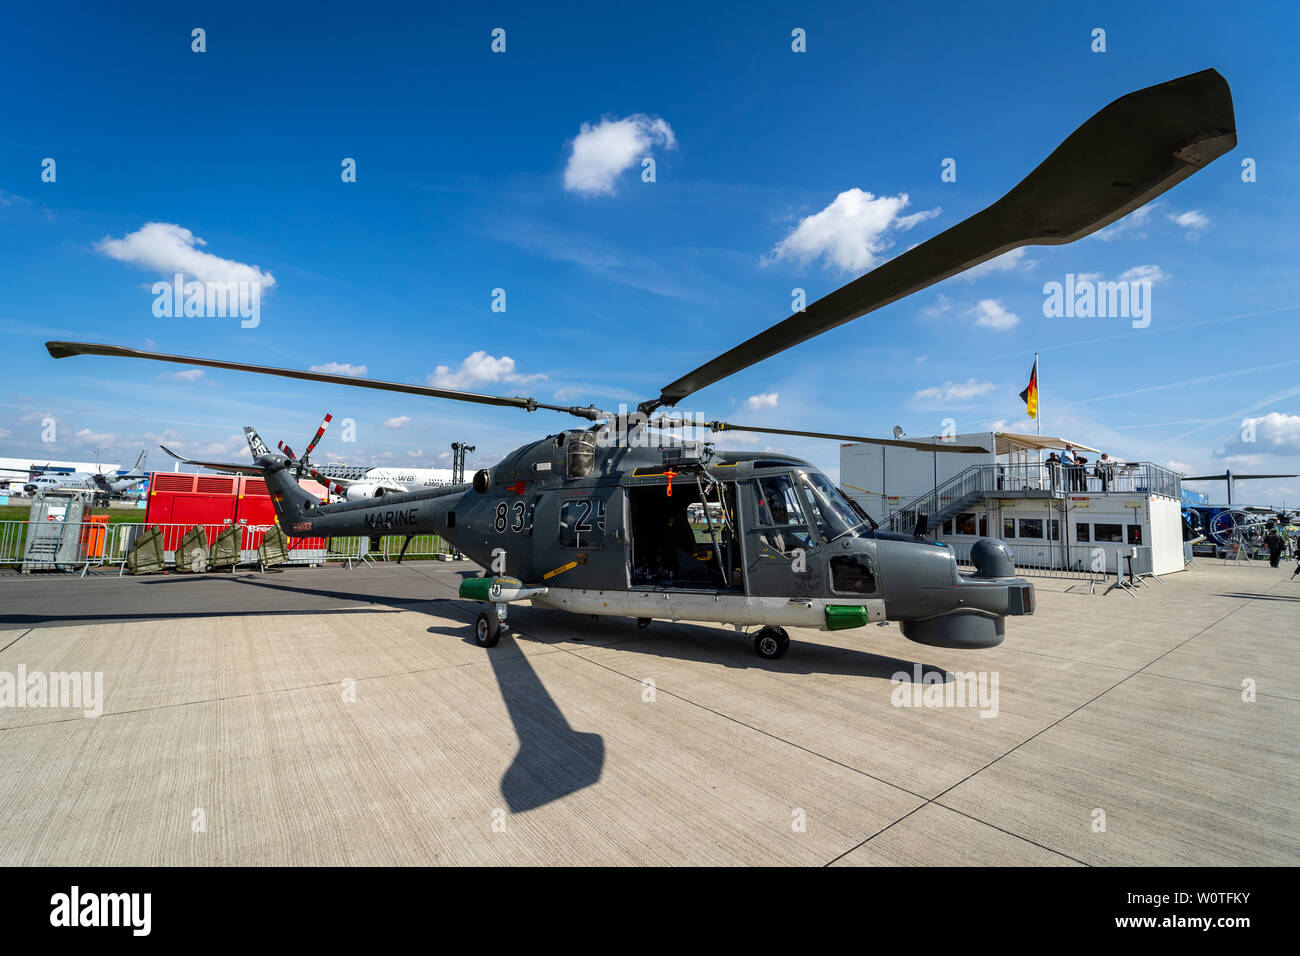 Berlino - 27 Aprile 2018: Multi-purpose elicottero militare Westland WG-13 Super Lynx Mk88a della marina tedesca. Mostra ILA Berlin Air Show 2018. Foto Stock